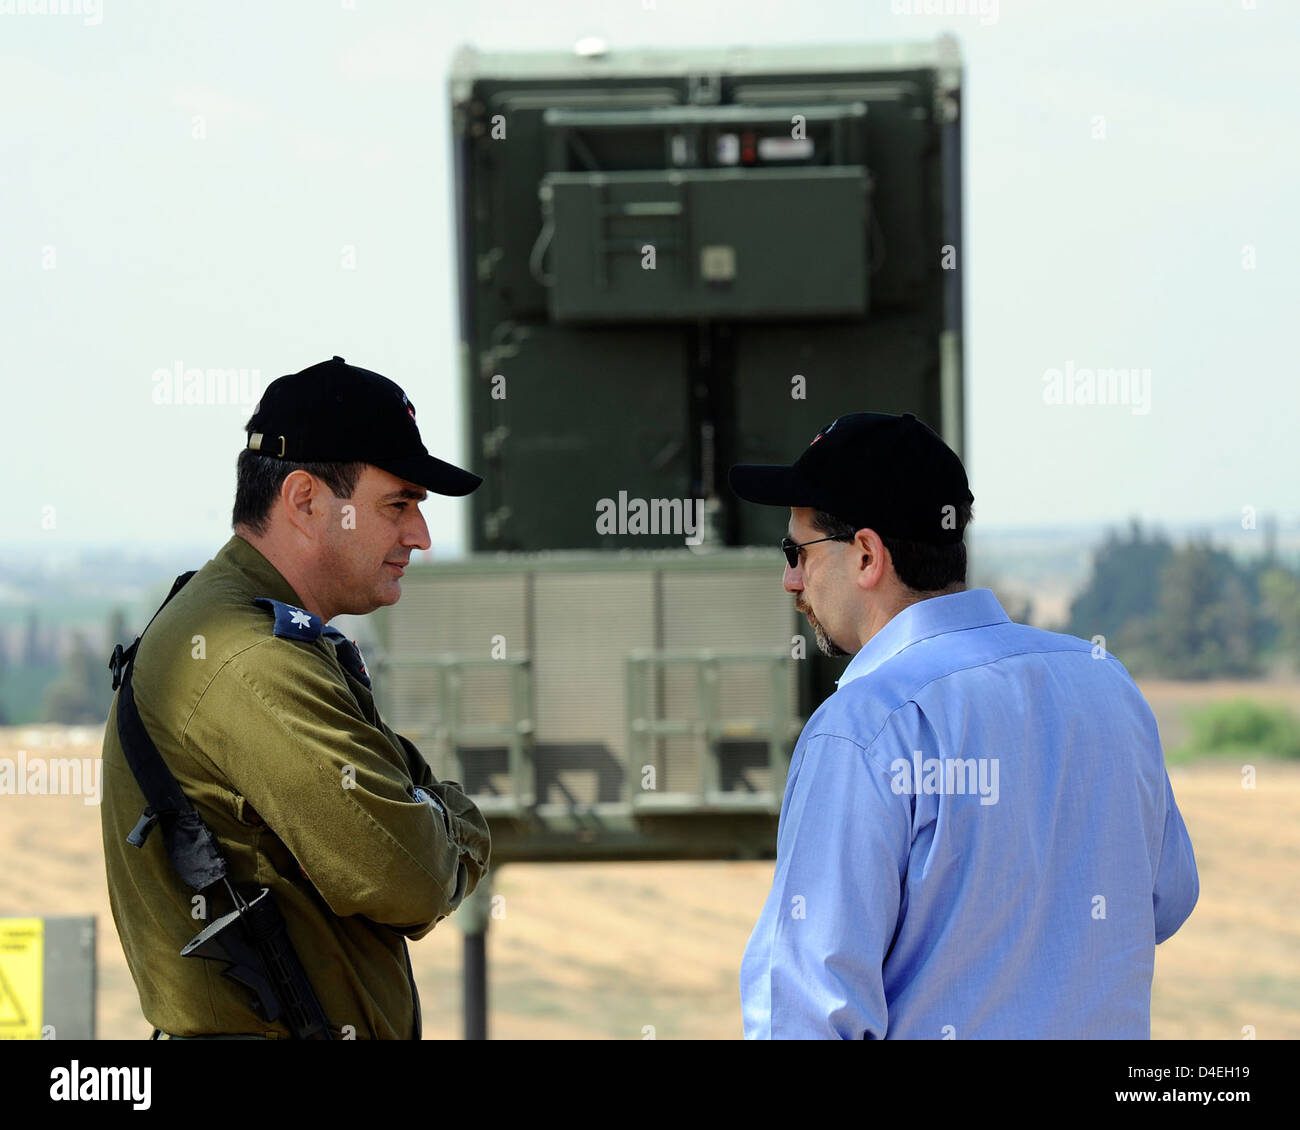 Le mardi 9 août 2011, l'ambassadeur Daniel B. Shapiro s'est rendu dans le sud d'Israël pour une visite de la batterie du dôme de fer. Il était accueilli par le capitaine Elad Tzinman, commandant de la batterie de la Force aérienne israélienne, et le colonel Tzvika Chaimovitch, commandant de la 167 e Escadre de la Force aérienne israélienne. L'ambassadeur Shapiro a reçu un mémoire sur le système Iron Dome et a visité le centre de commandement. Dans un communiqué de presse à la suite de la tournée, l’Ambassadeur Shapiro a réitéré que les États-Unis étaient attachés à la sécurité d’Israël. Banque D'Images